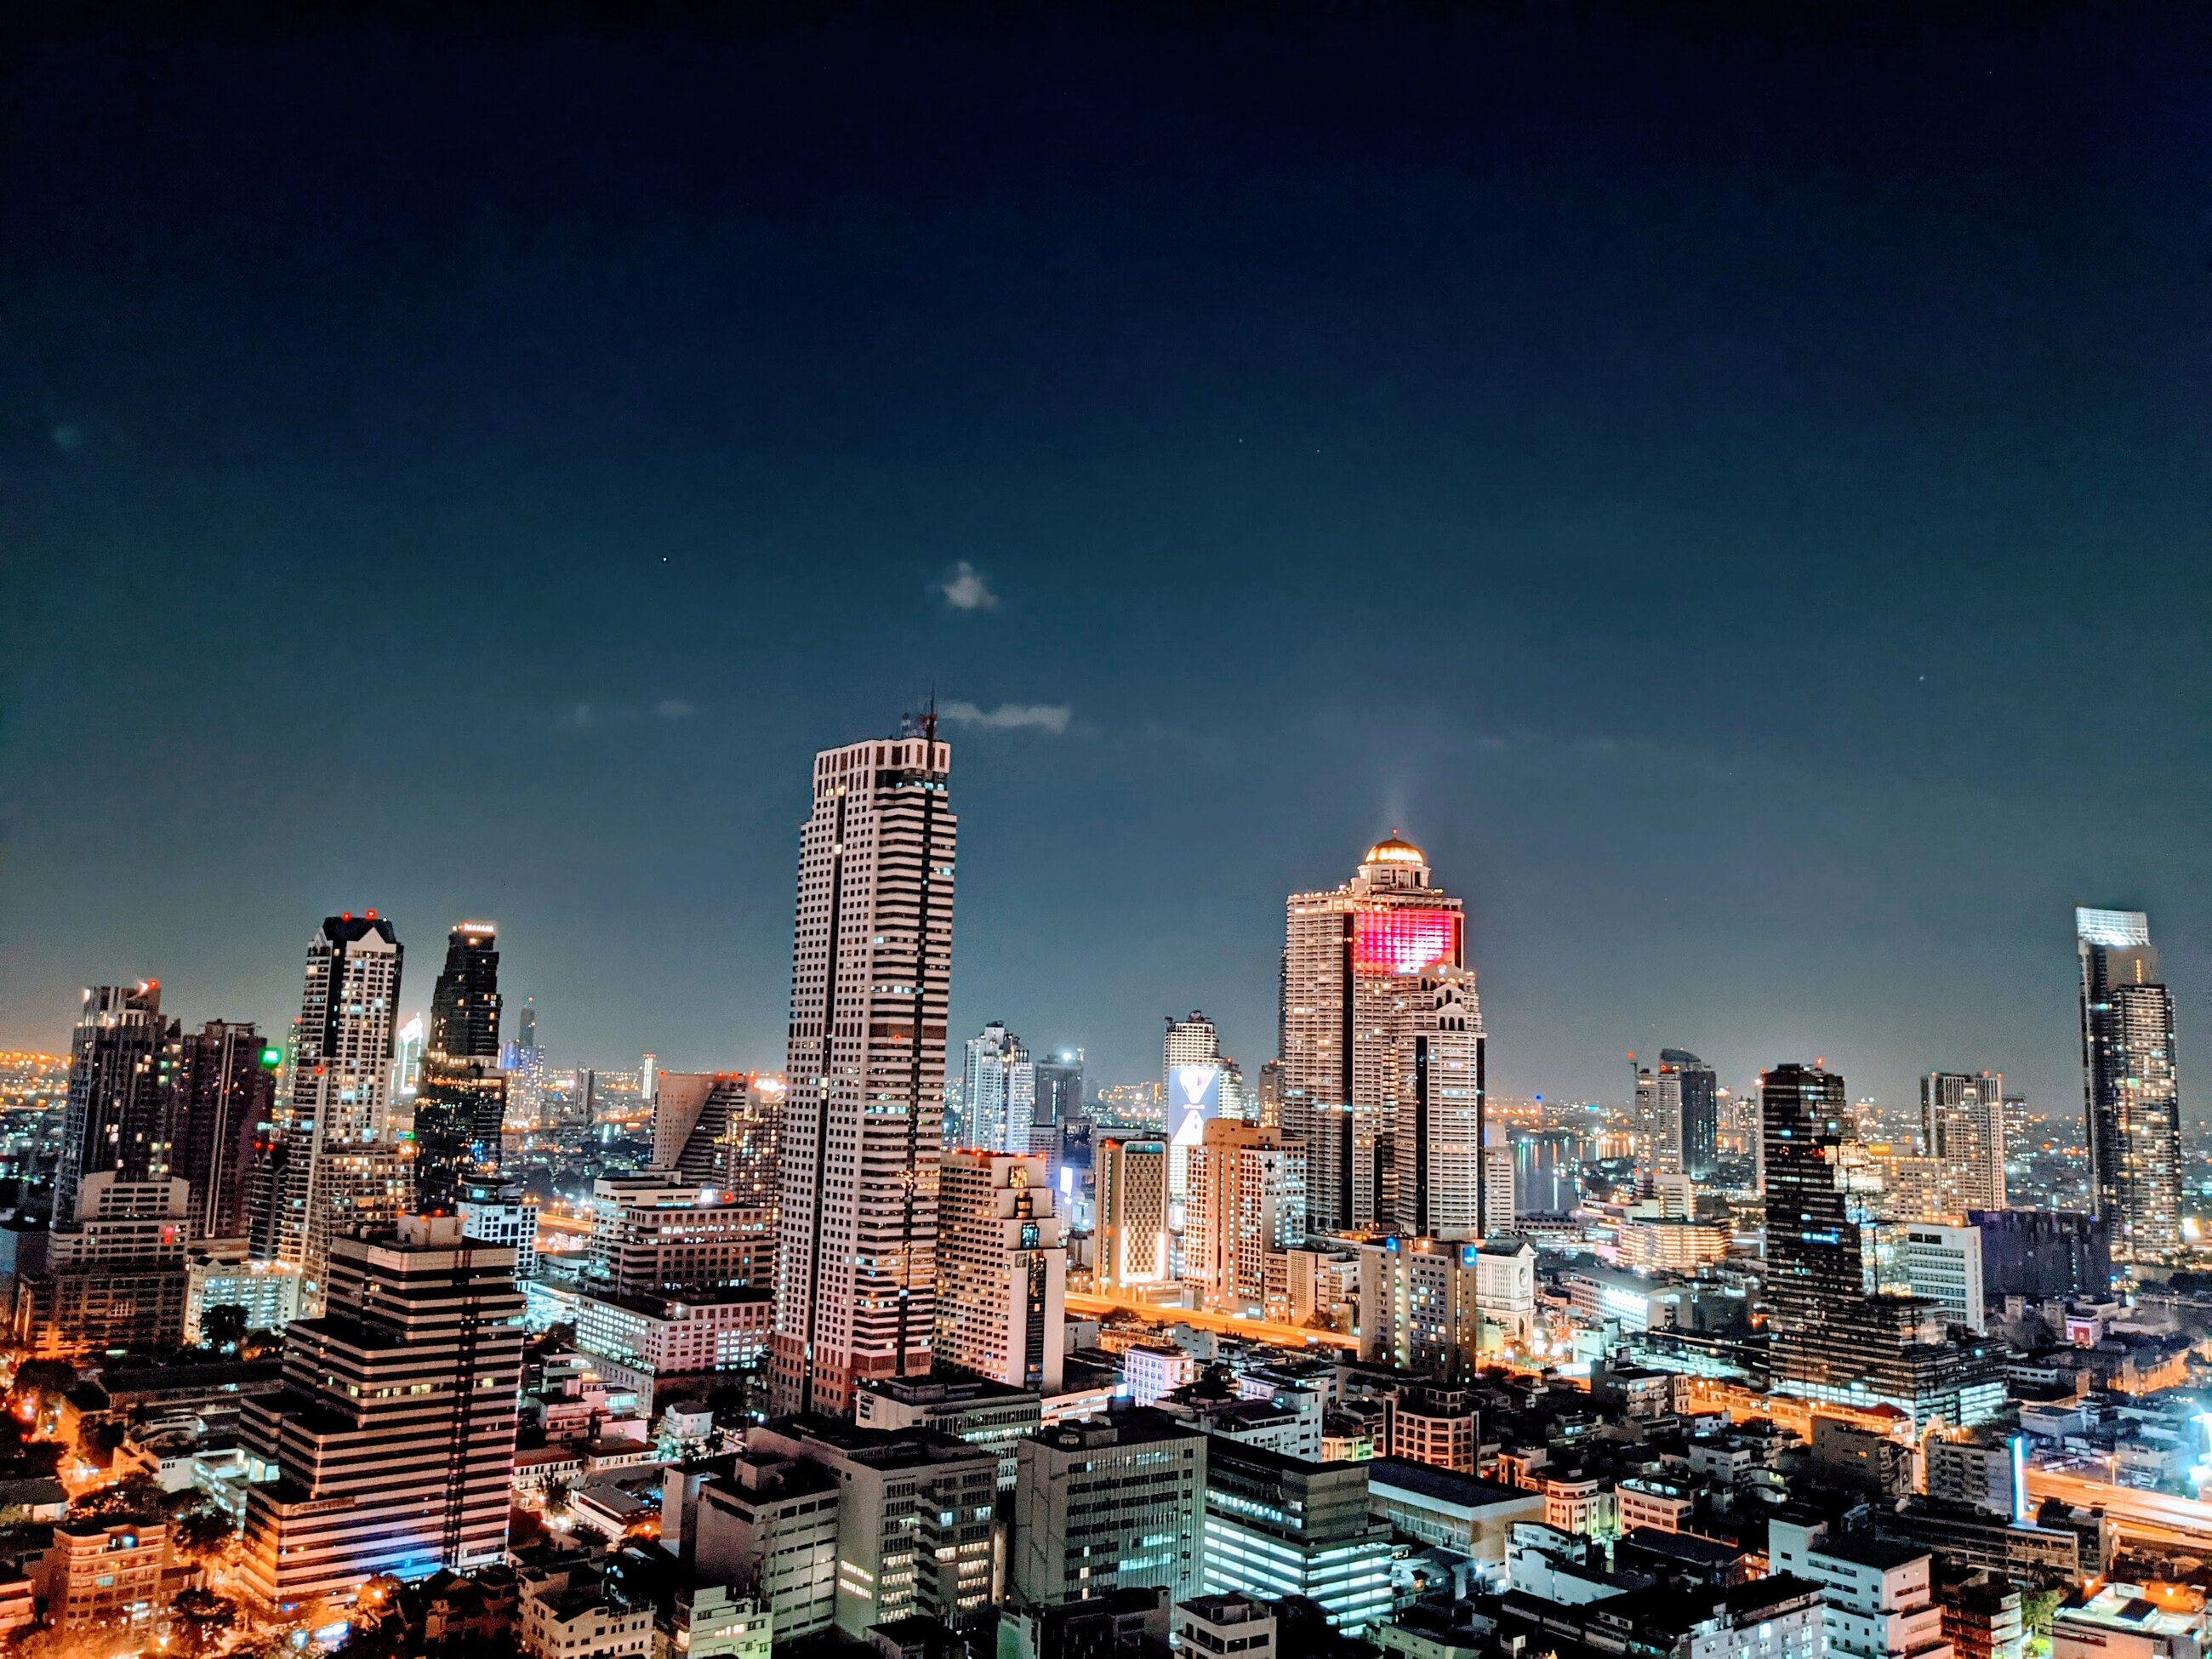 Bangkok at Night 